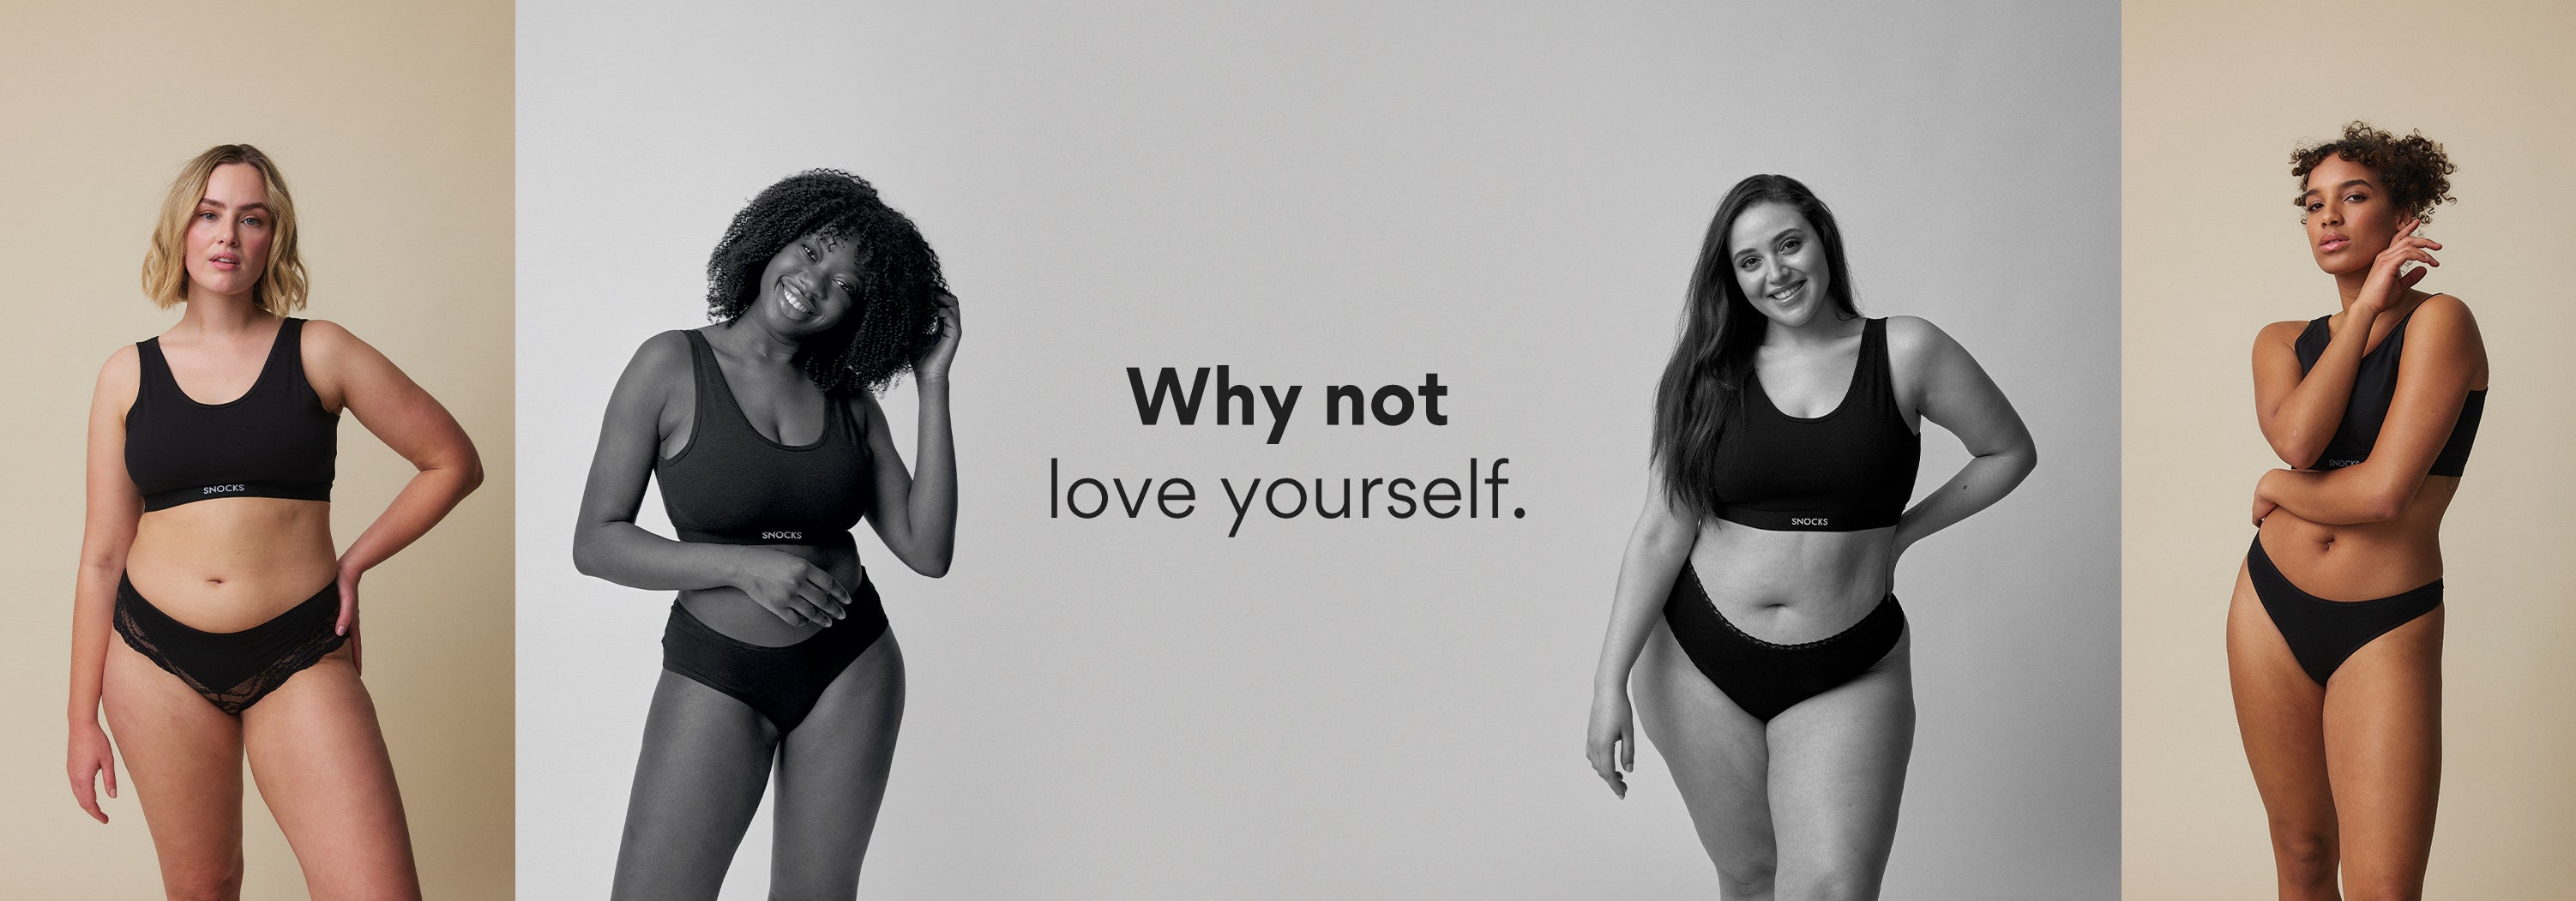 Pourquoi ne pas s'aimer soi-même.